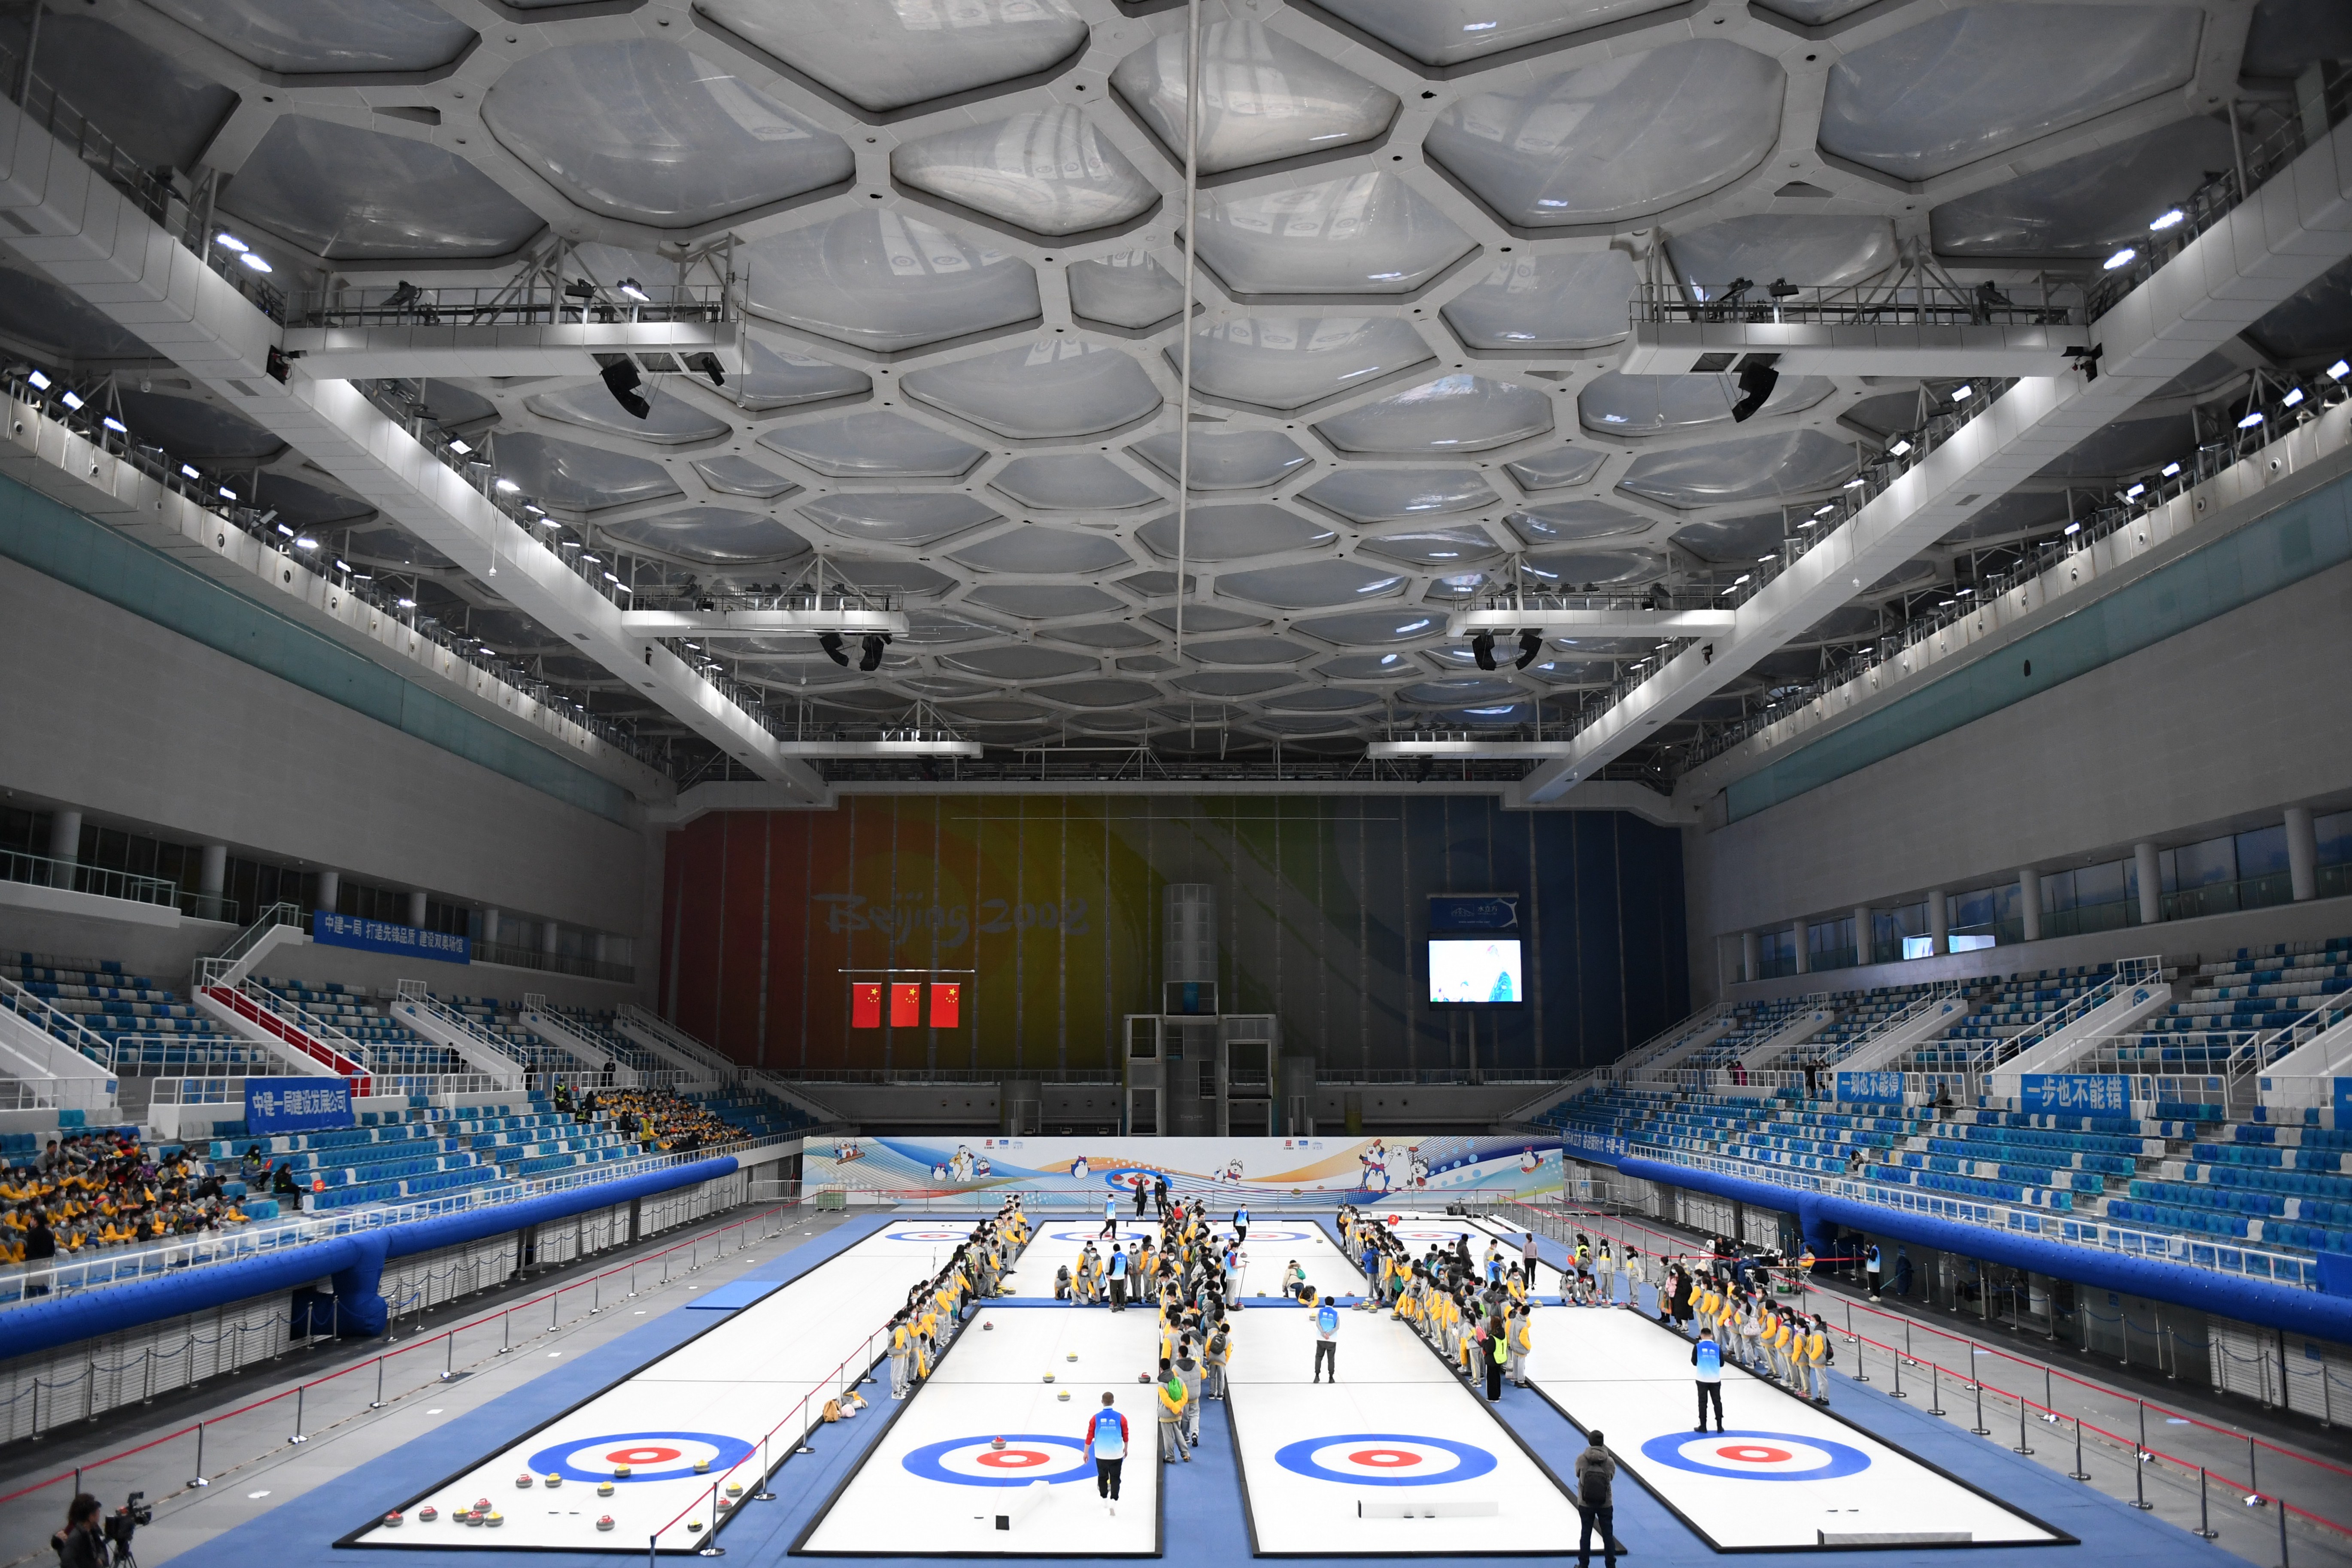 改造利用2008年奥运会既有场馆,是冬奥会北京赛区建设特色,13个竞赛和